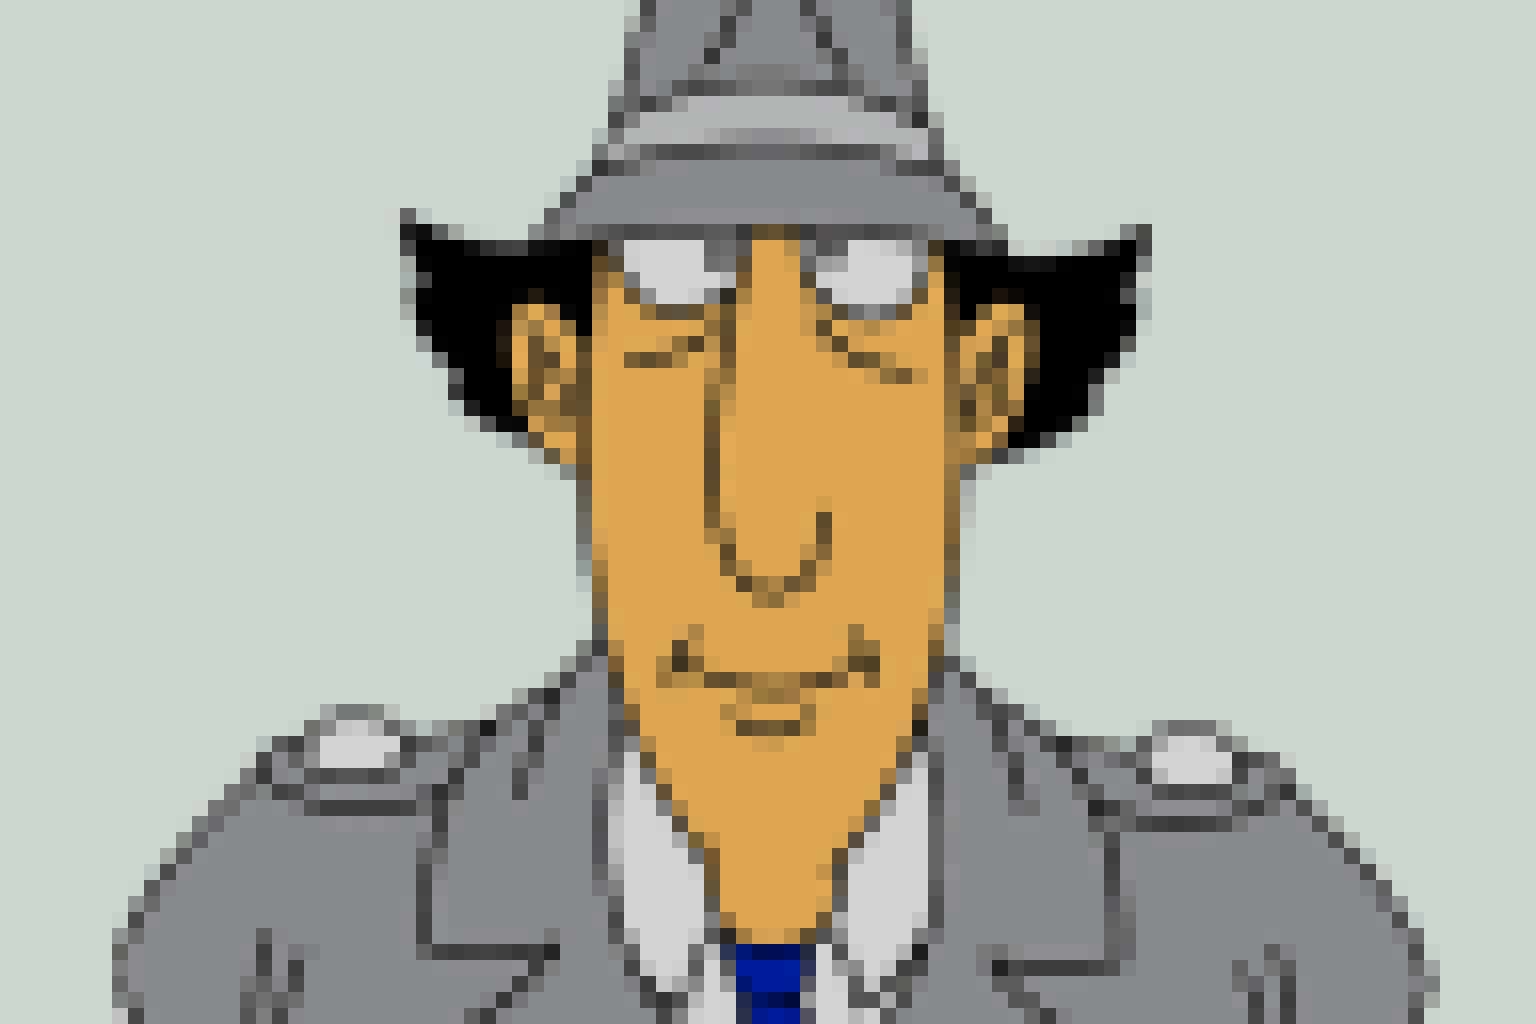 Inspector Gadget as pixel art